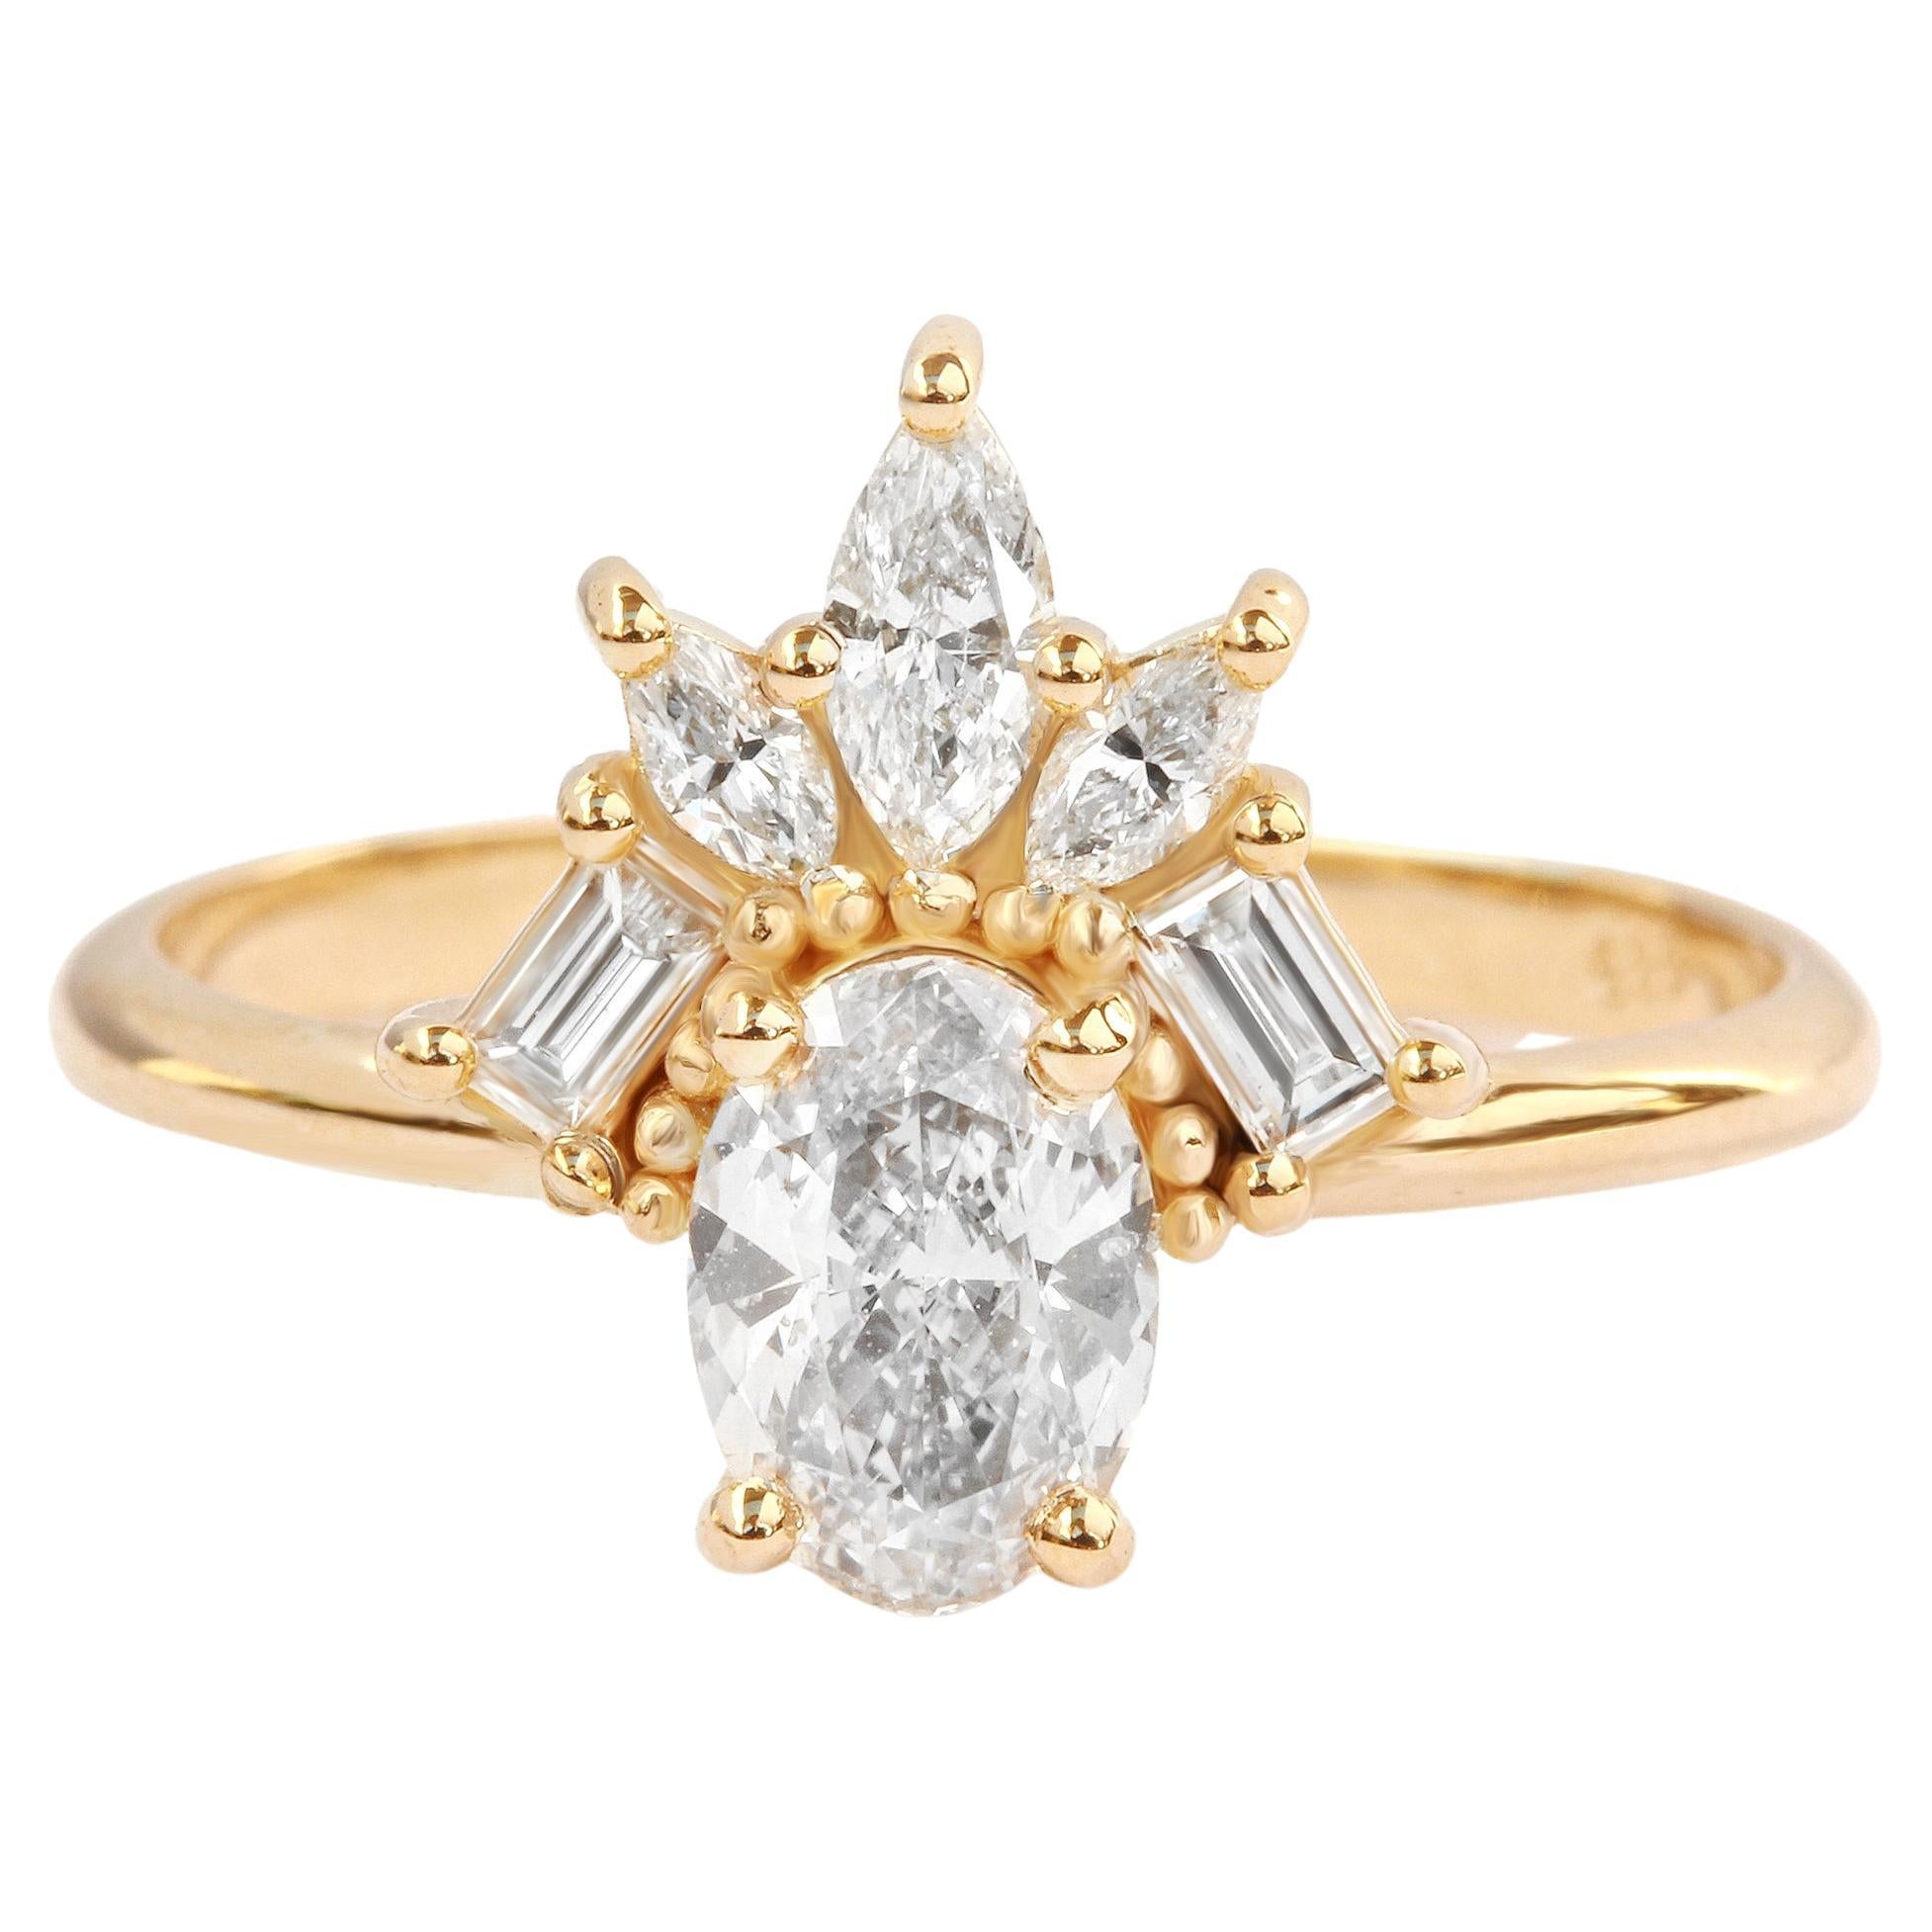 Ovaler Diamant 1,0 Karat Einzigartiger Art Deco Verlobungsring, zeitgenössisch - "Gatsby"